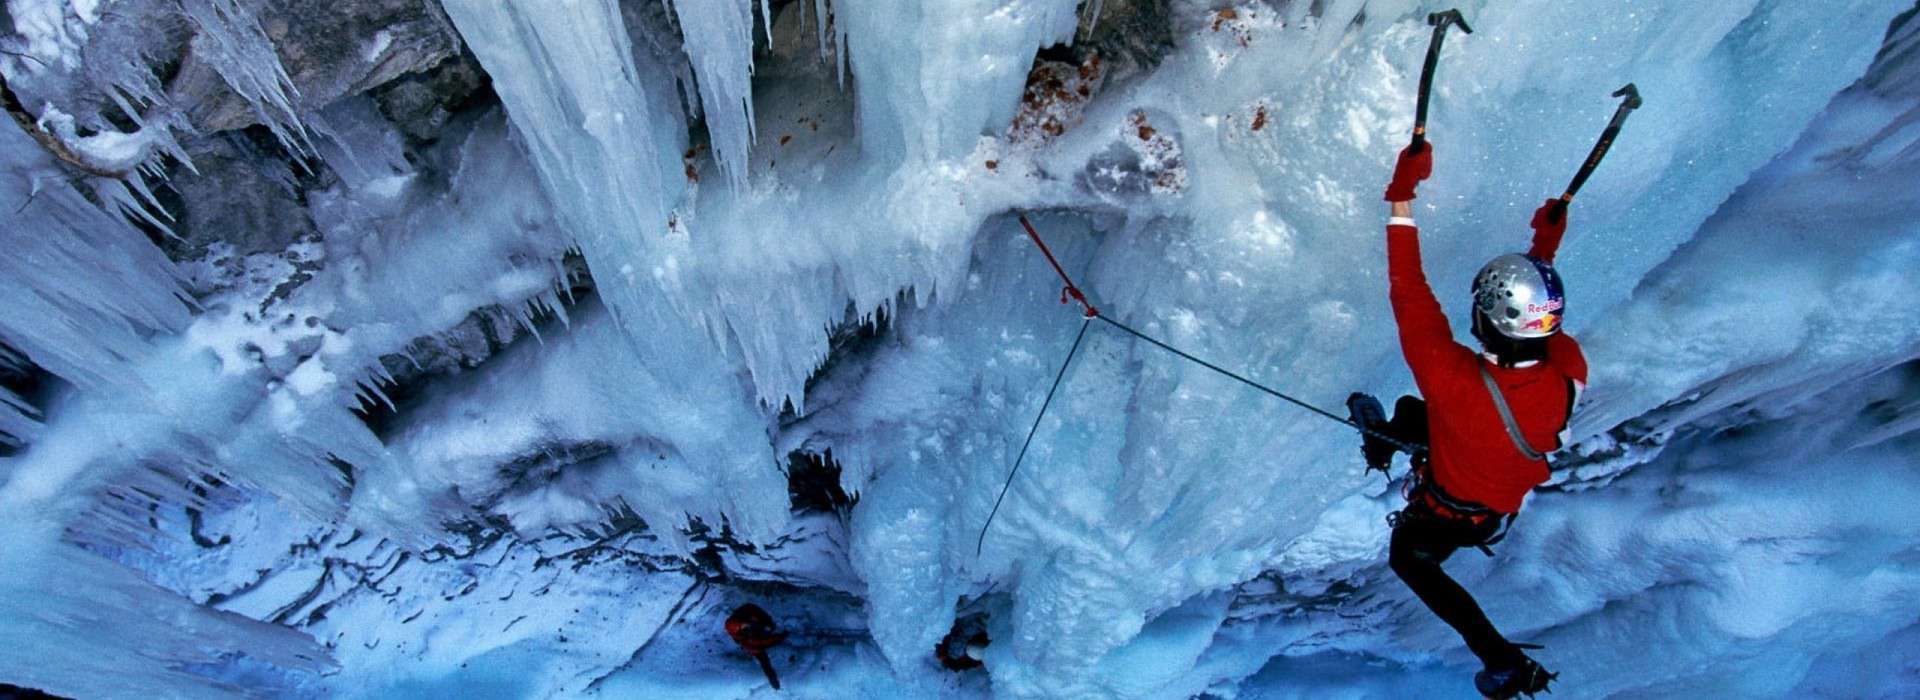 Ice Climbing #17